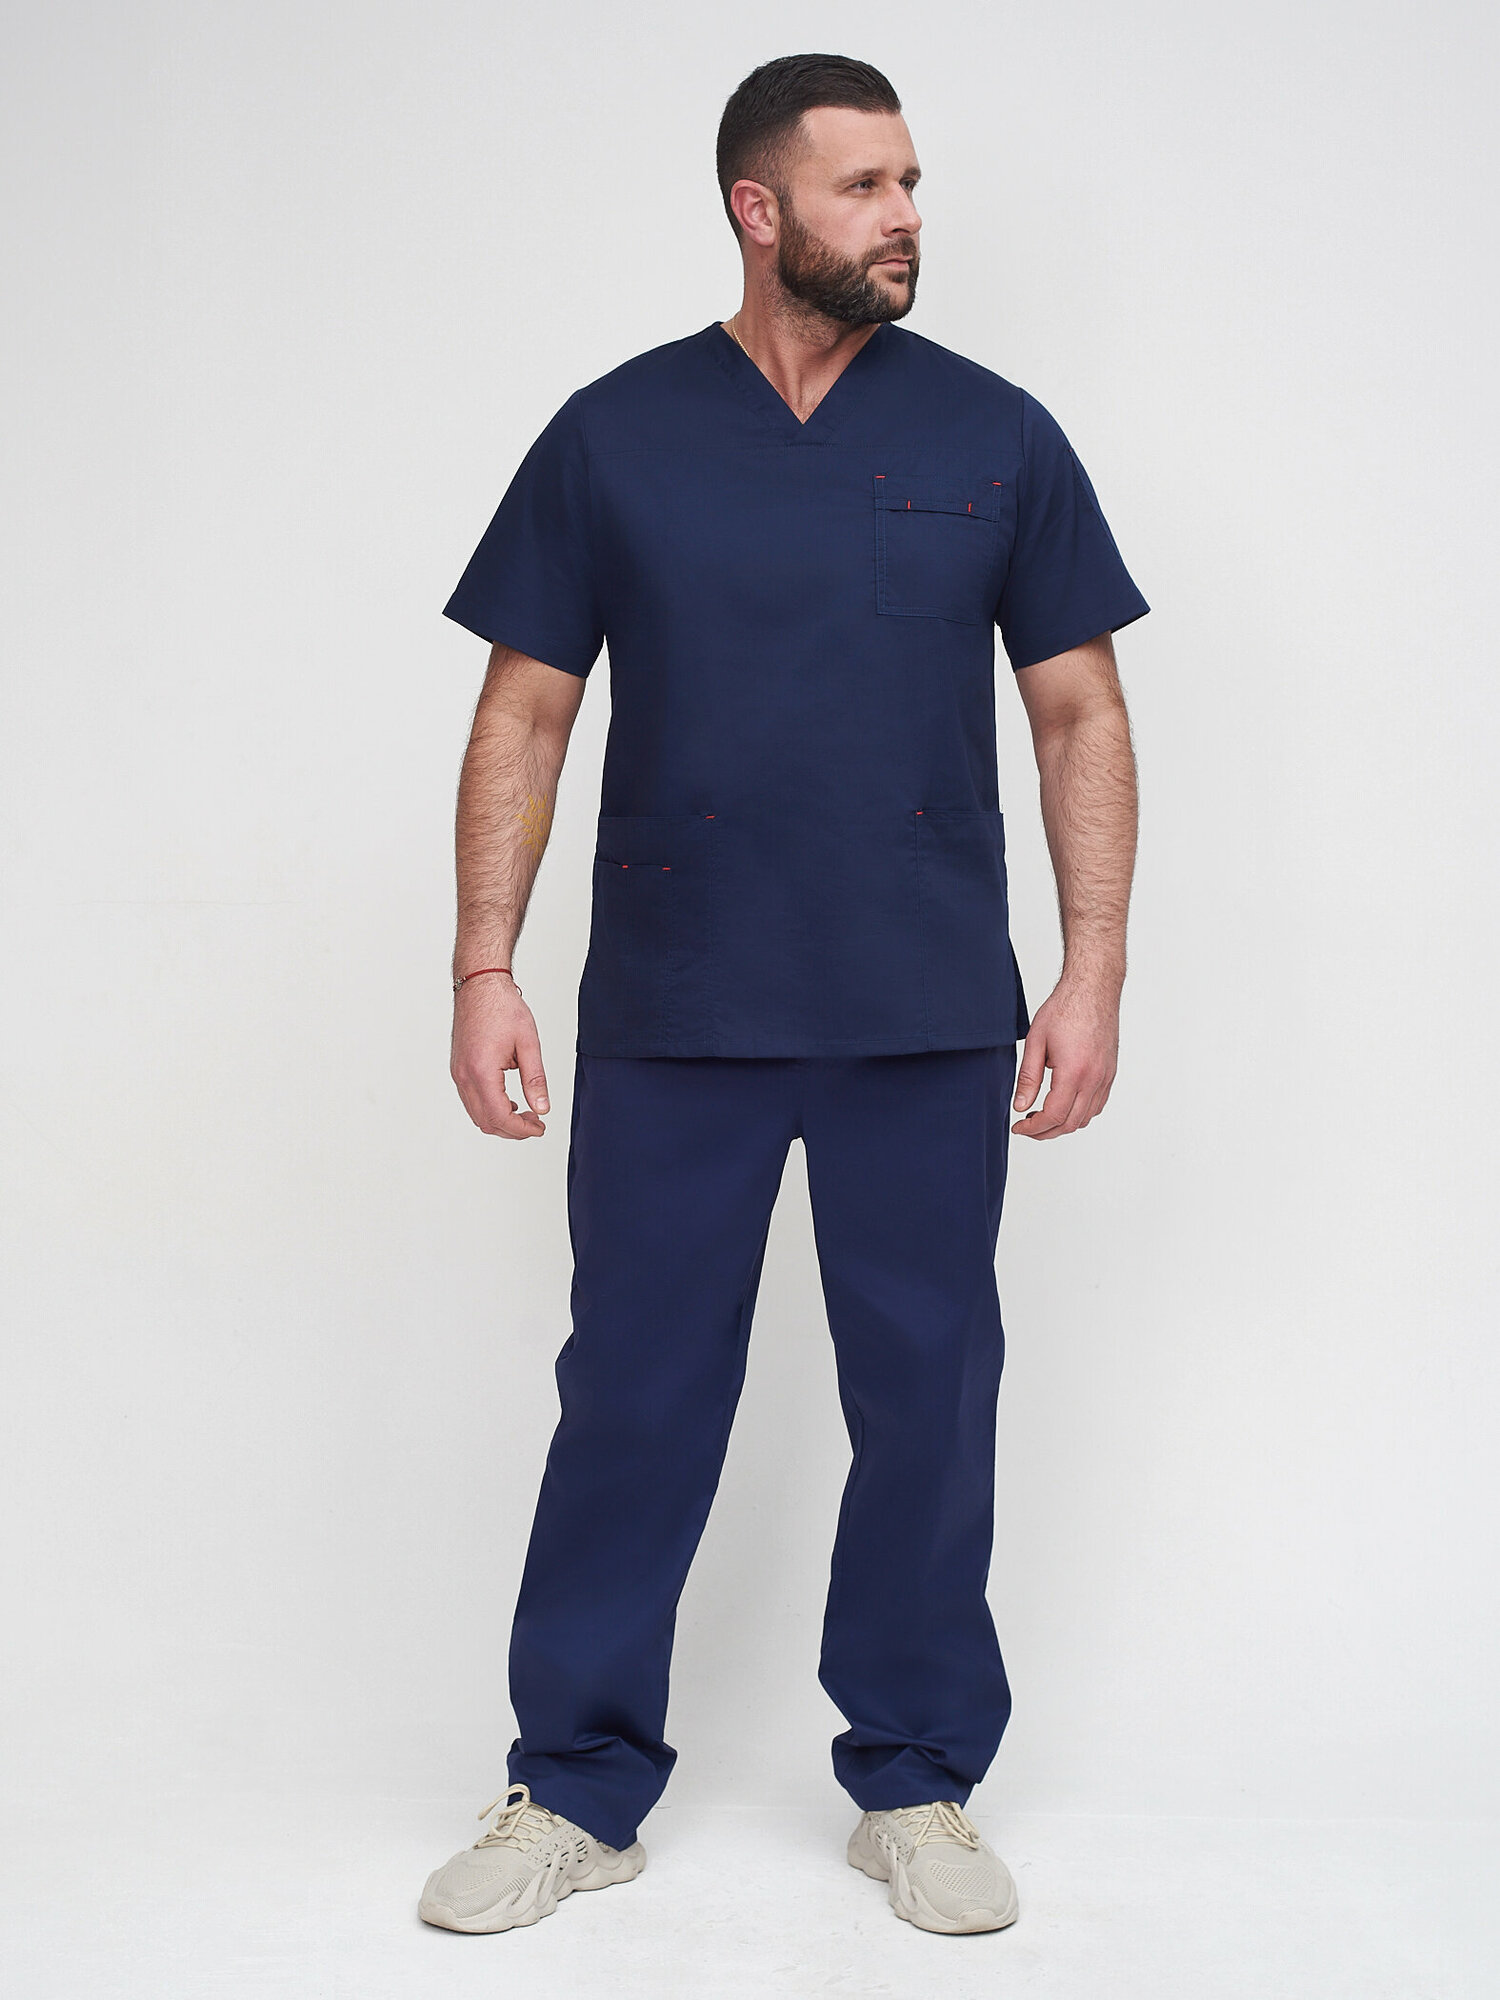 Медицинский мужской костюм 385.4.2 Uniformed, ткань сатори стрейч, рукав короткий, цвет темно-синий, отделка красная, рост 188, размер 62